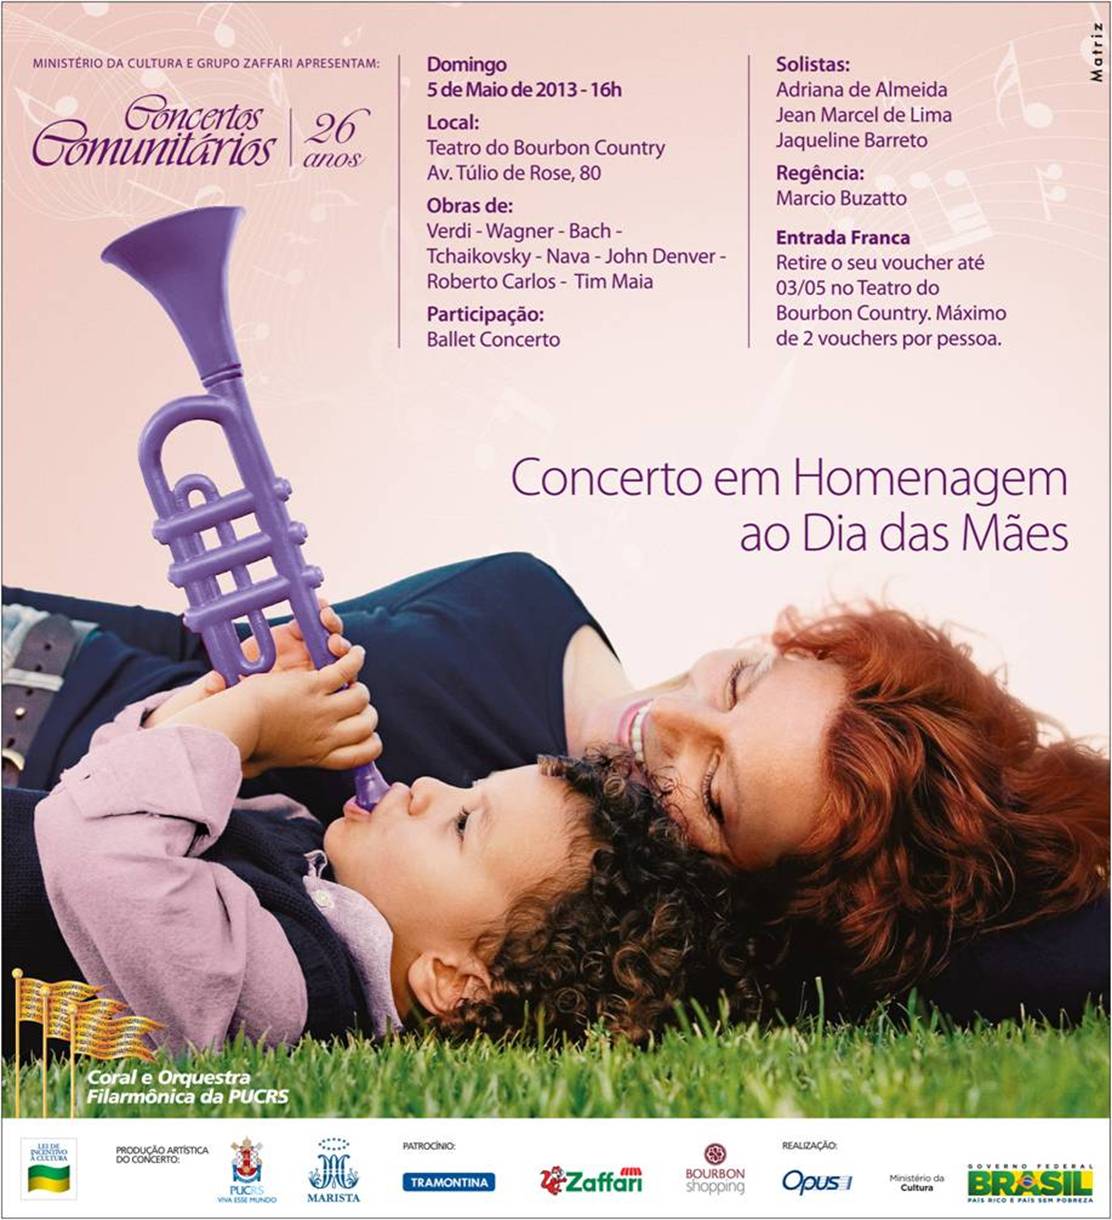 Arte: Concertos Comunitários faz homenagem ao Dia das Mães